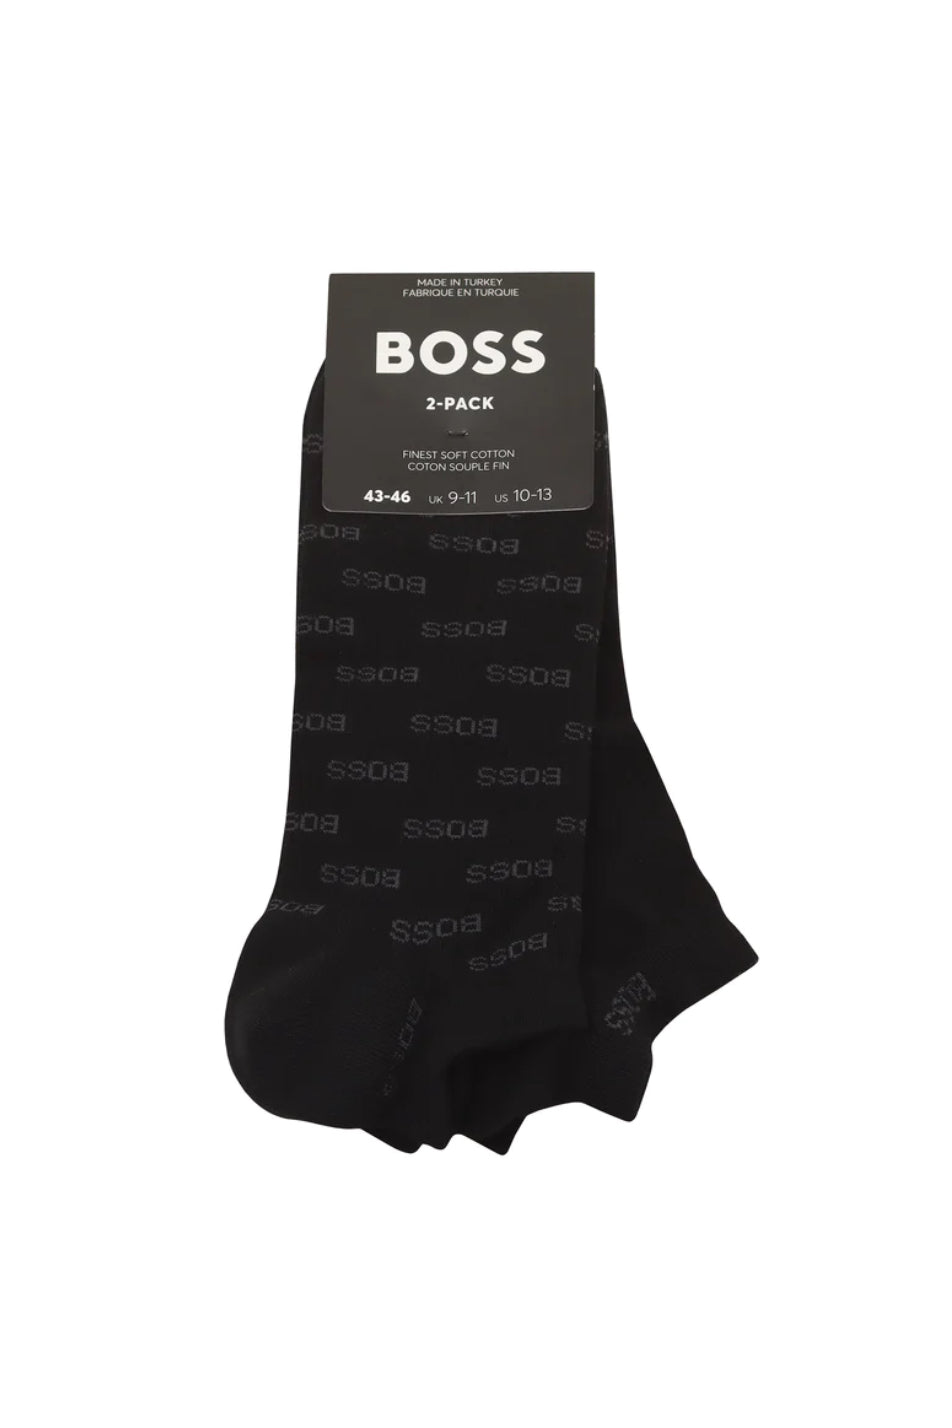 BOSS 2 Pack Men's Allover Sock